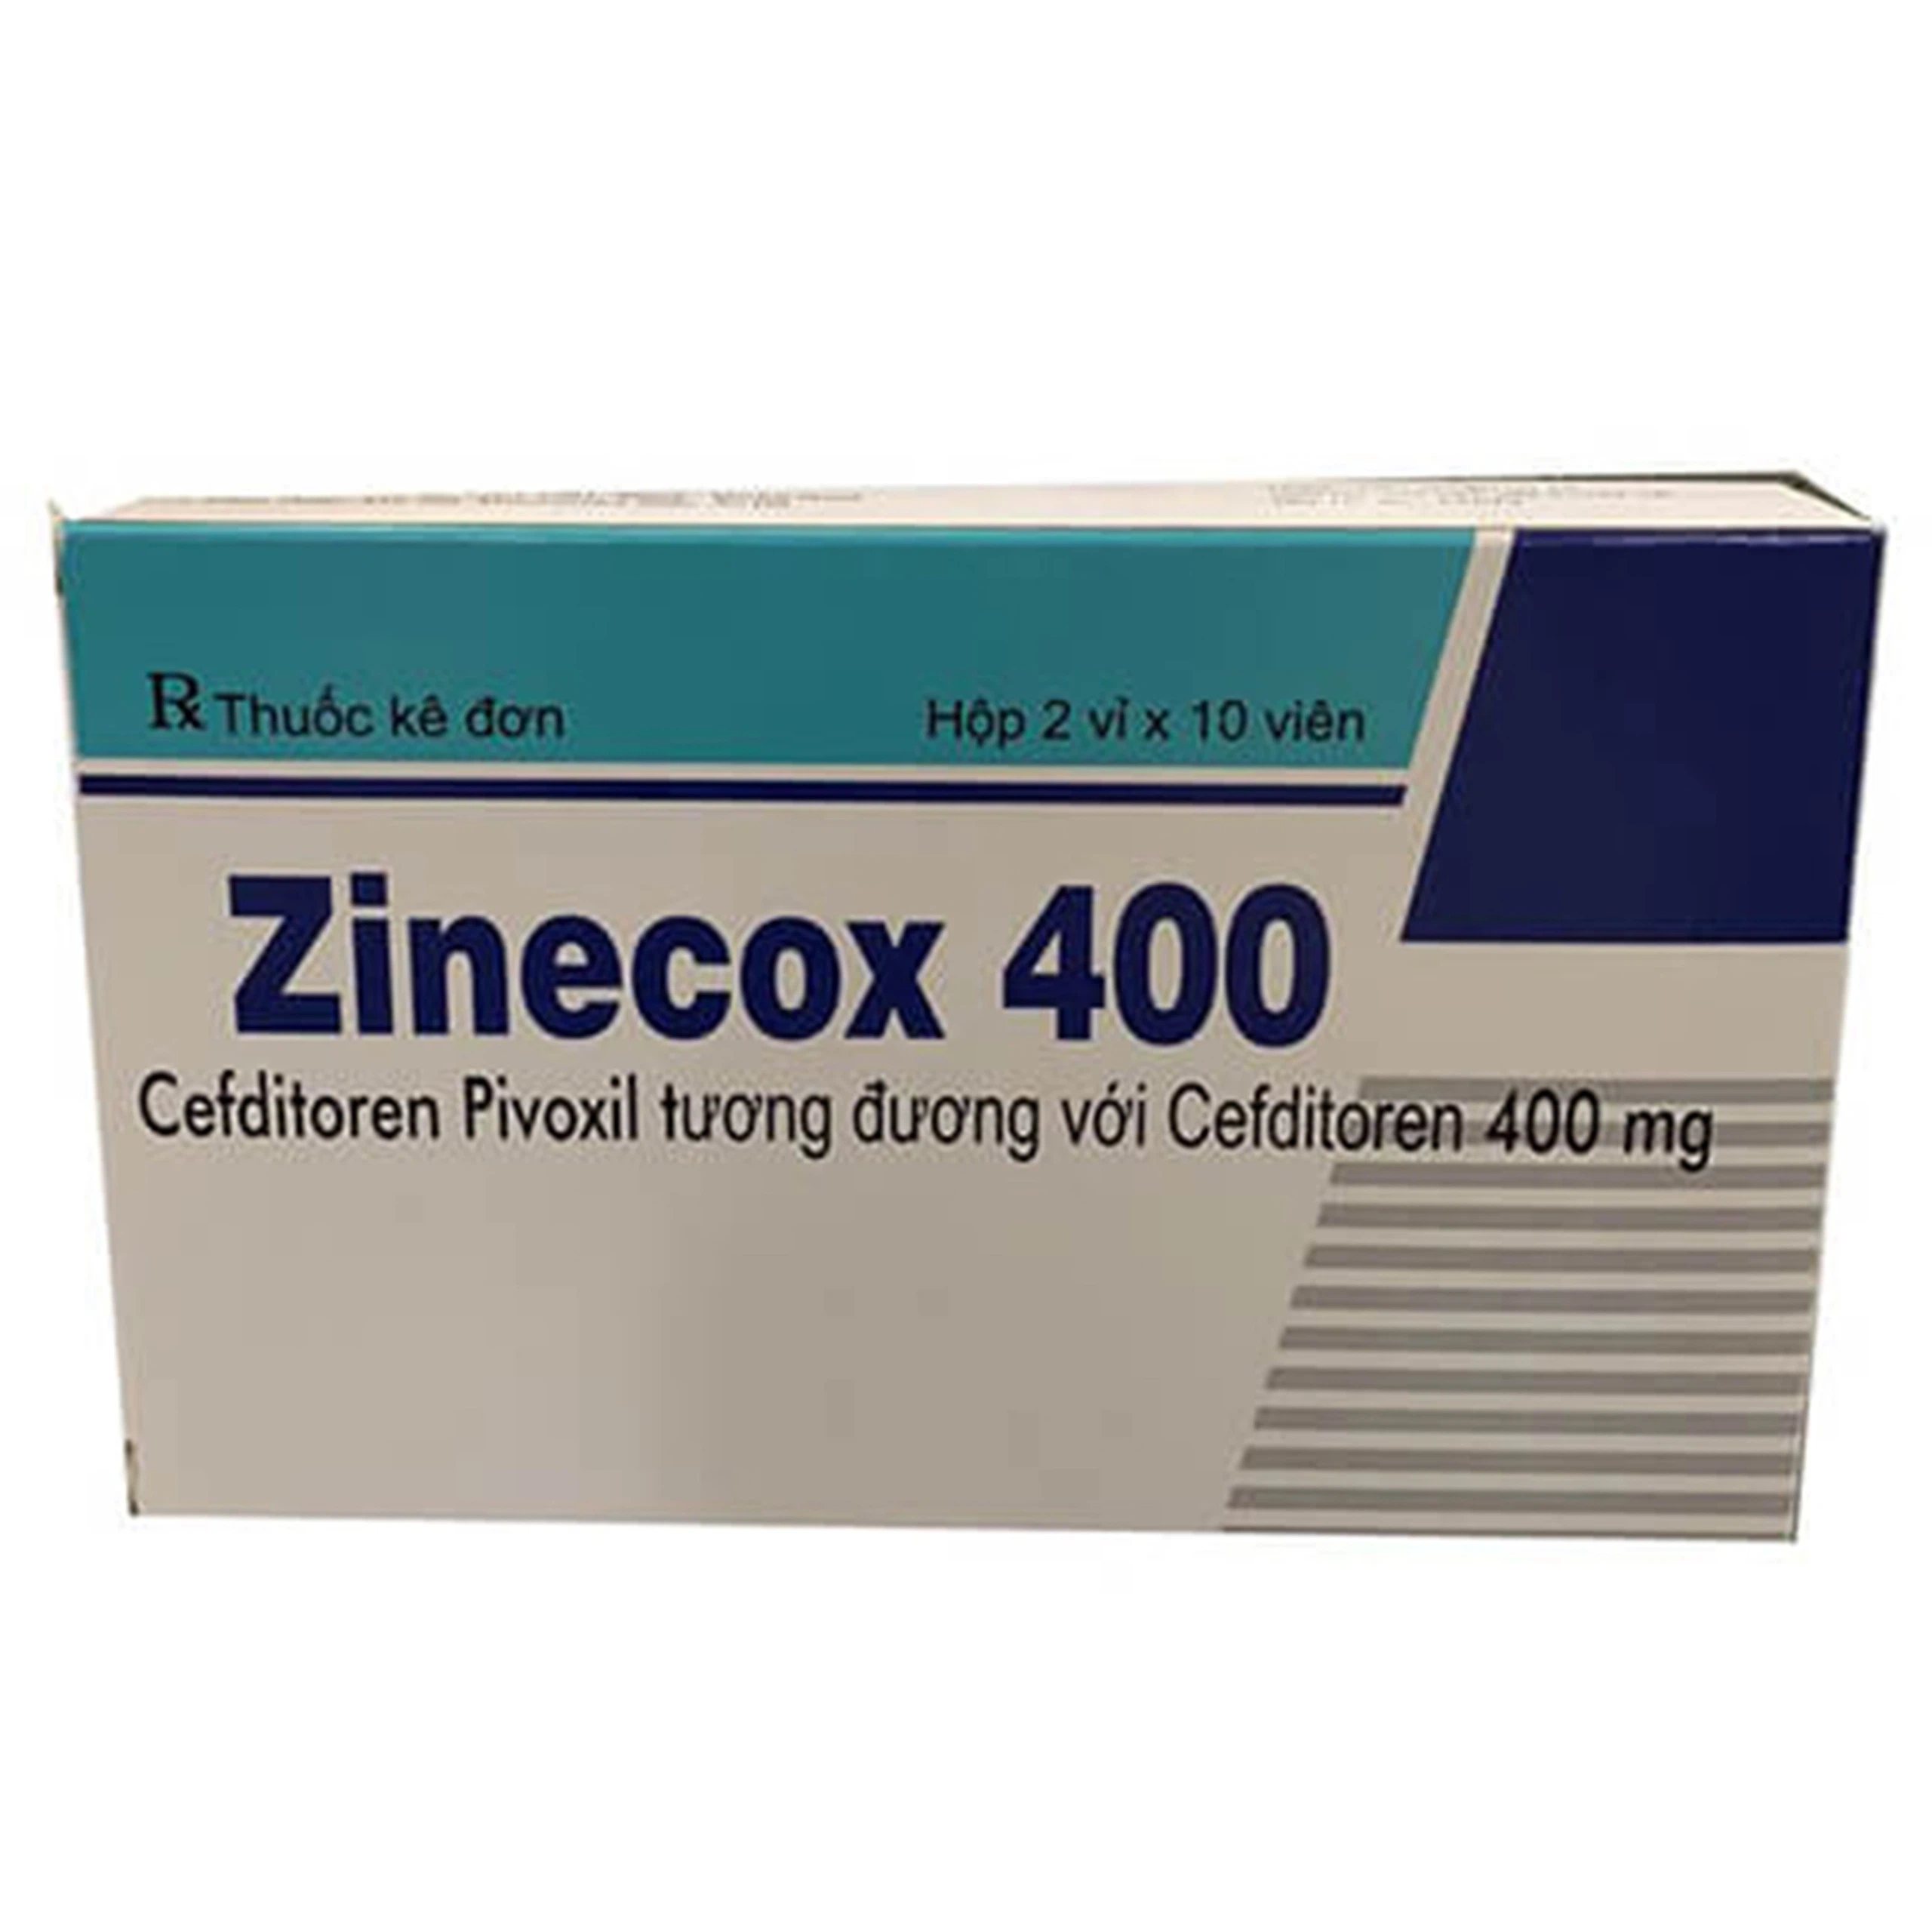 Thuốc Zinecox 400 Maxim điều trị viêm amidan, viêm họng cấp (2 vỉ x 10 viên)